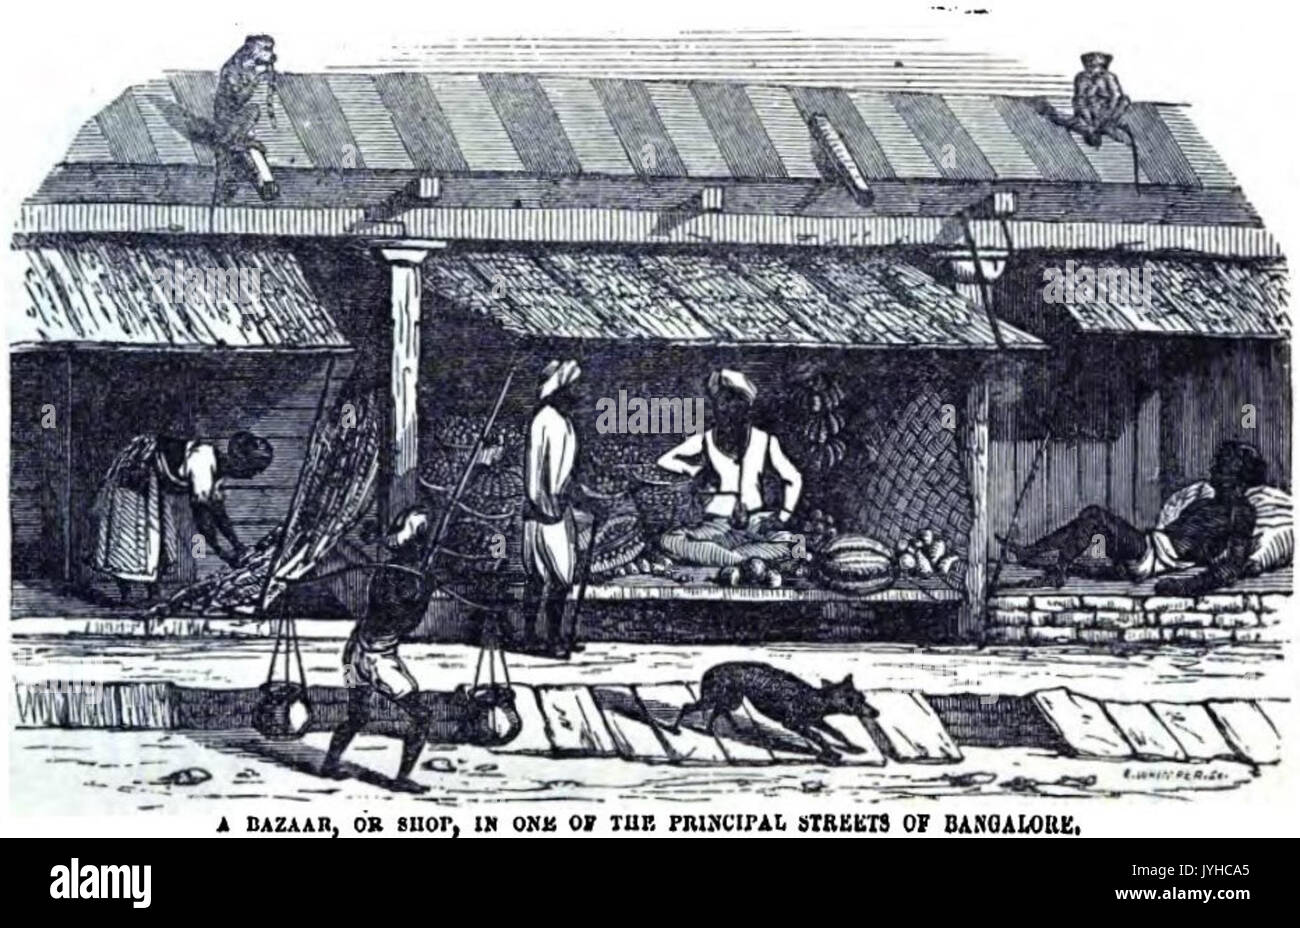 Un Bazar, ou boutique, sur l'une des principales rues de Bangalore (p.97, 1856) Copie Banque D'Images